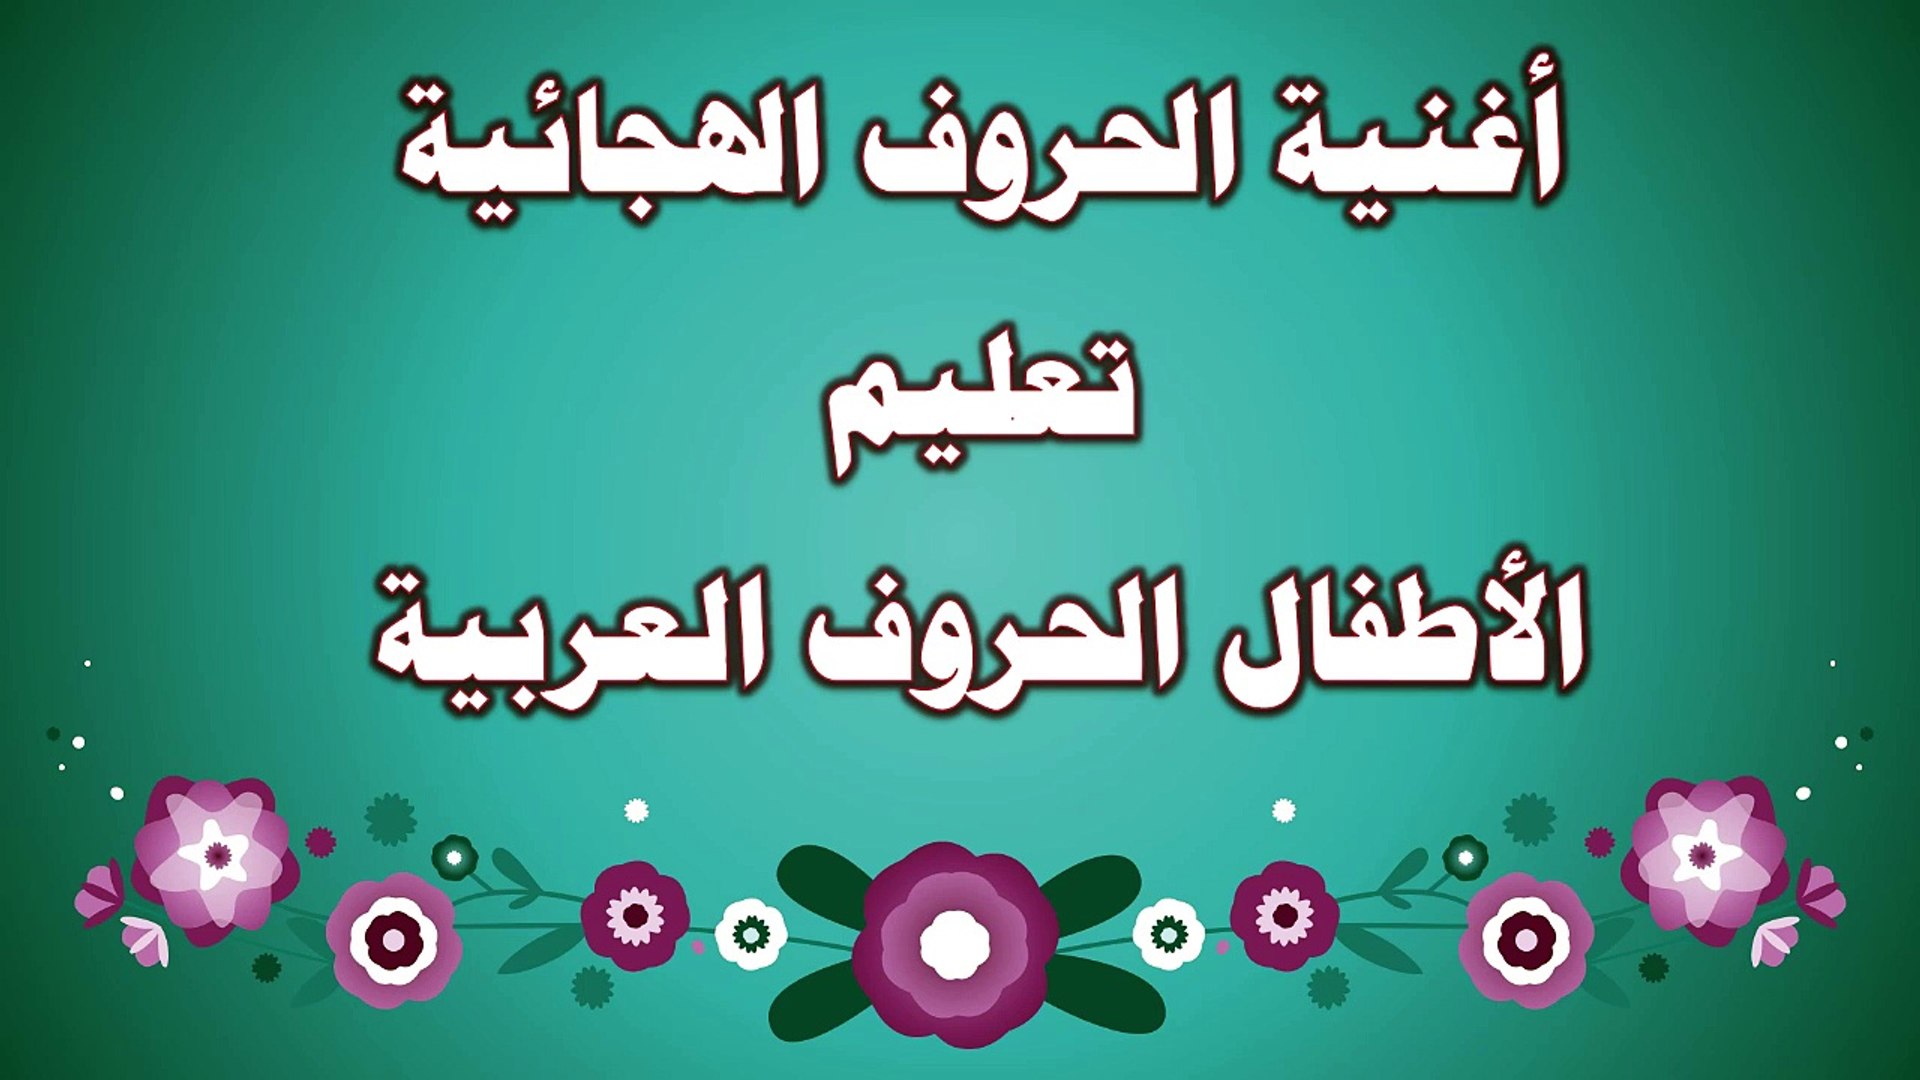 أنشودة الحروف العربية للأطفال | arabic abc song